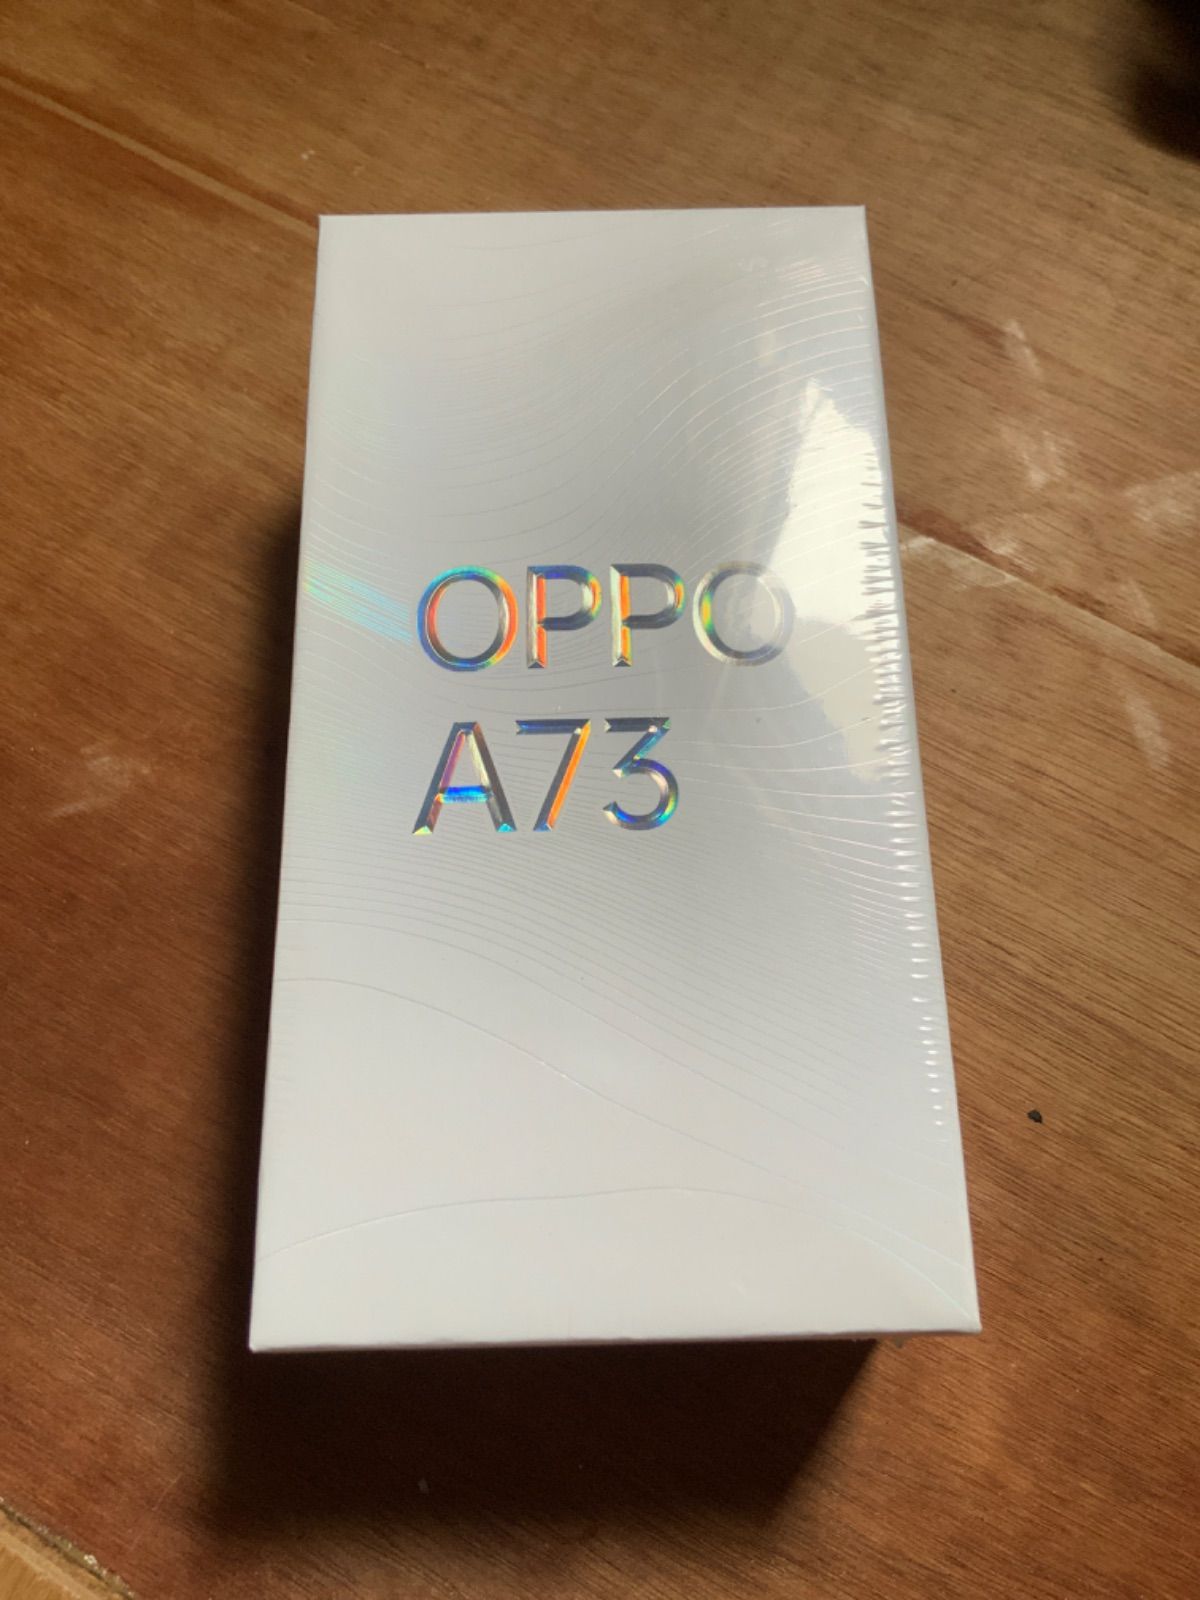 [新品]OPPO Oppo A73 ネービーブルー CPH2099 BL 版